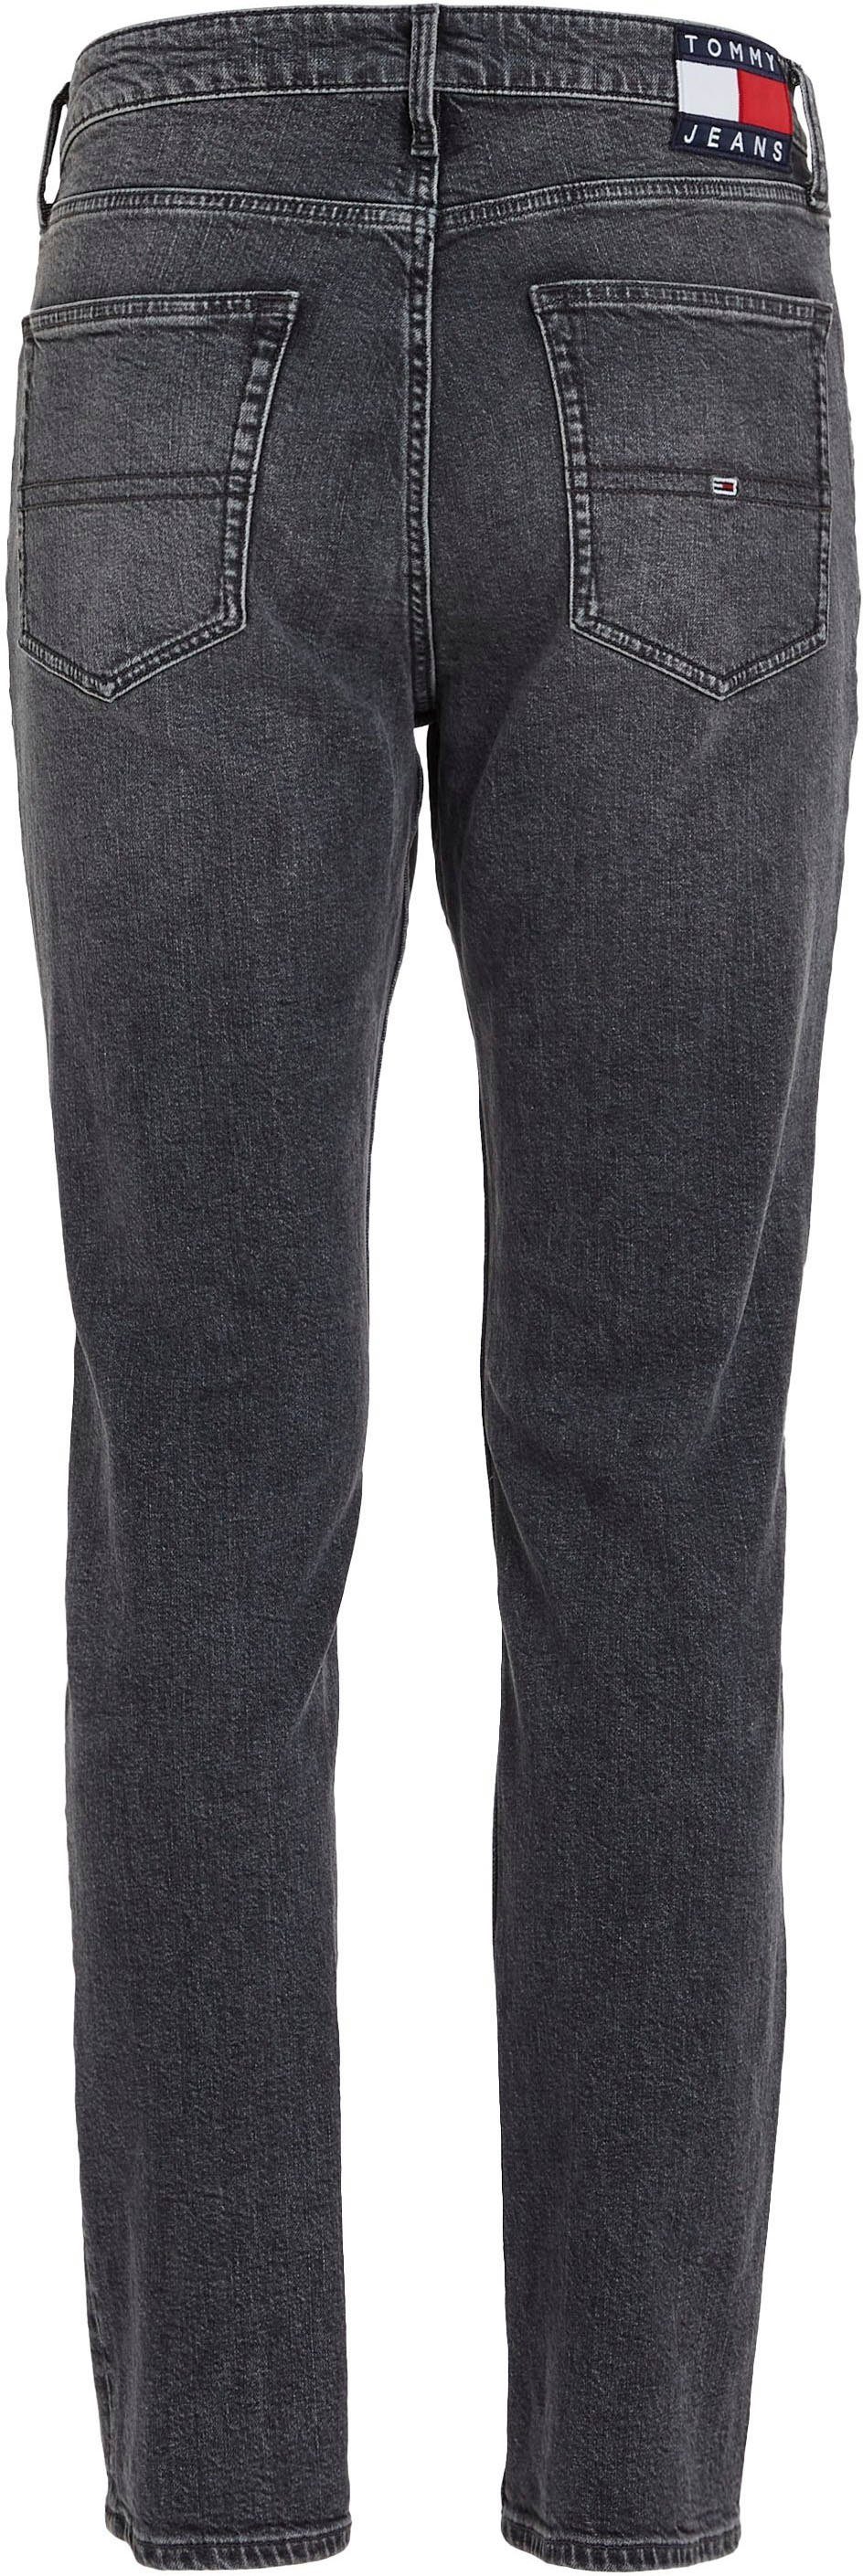 Jeans 5-Pocket-Jeans Denim Black RGLR RYAN STRGHT Tommy